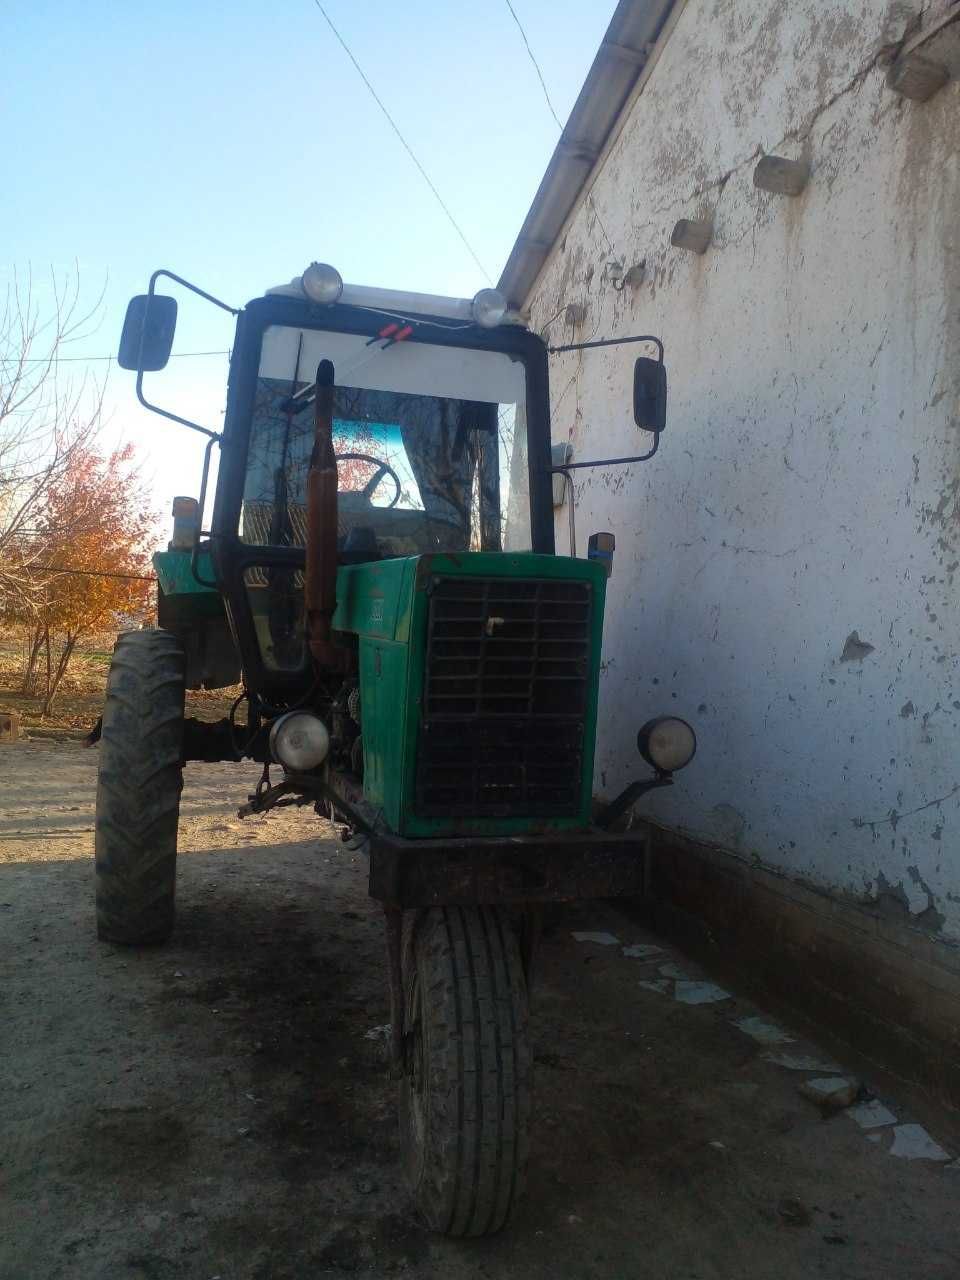 Traktor Belarus 80 ishlab chiqilgan yılı 2008